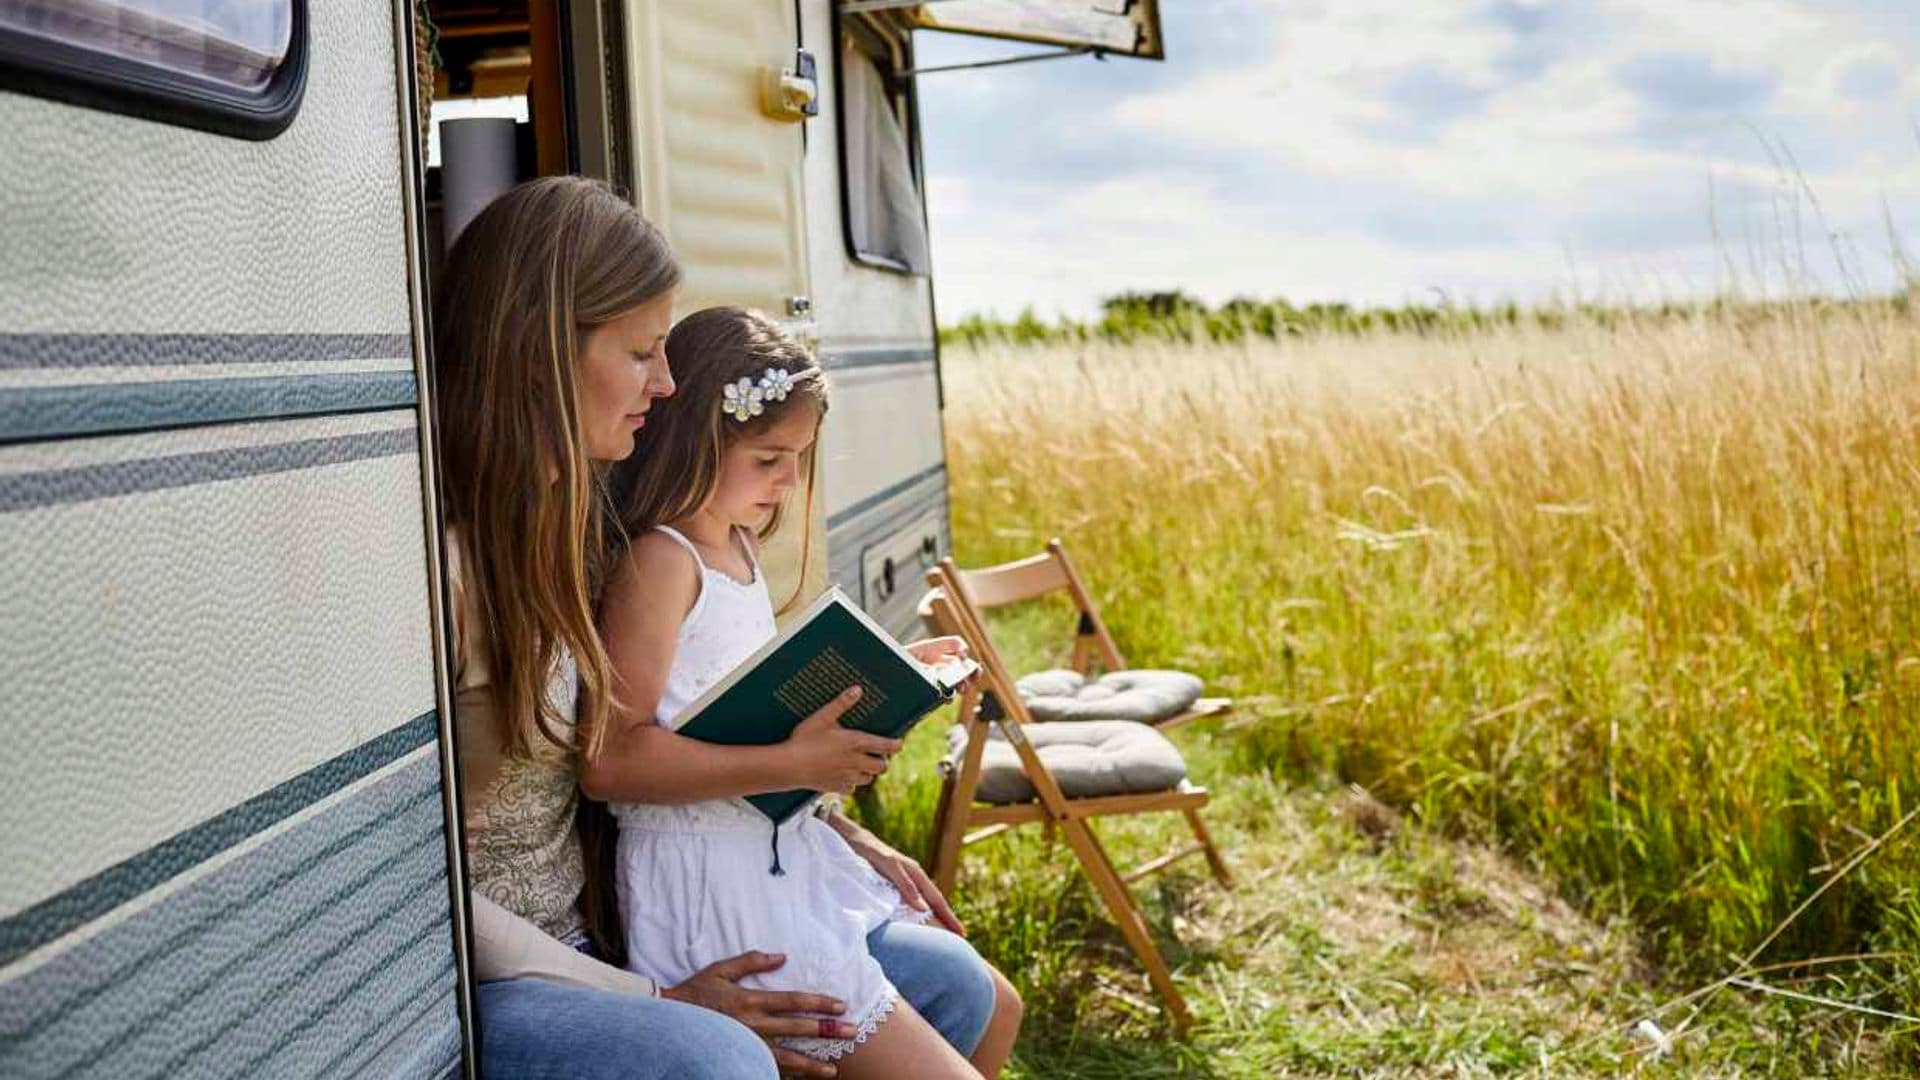 Leer y escribir, dos buenas maneras de que los más pequeños entrenen su cerebro en vacaciones